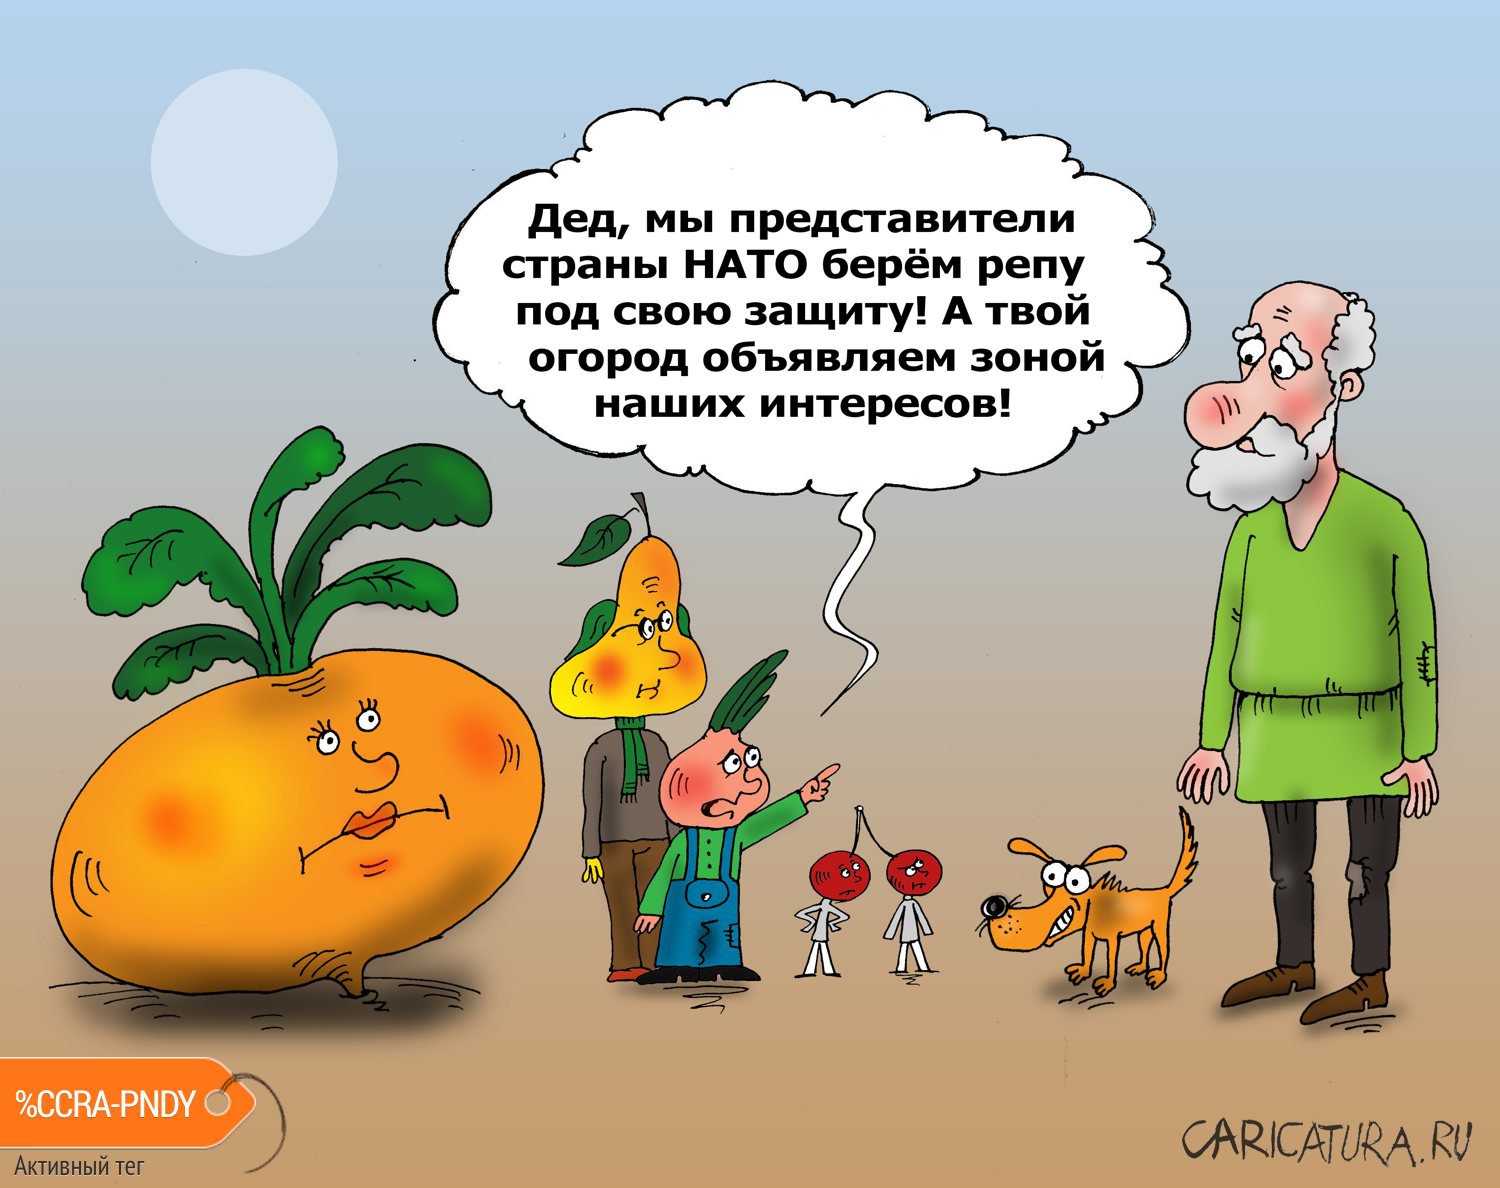 Карикатура "Агрессия", Валерий Тарасенко